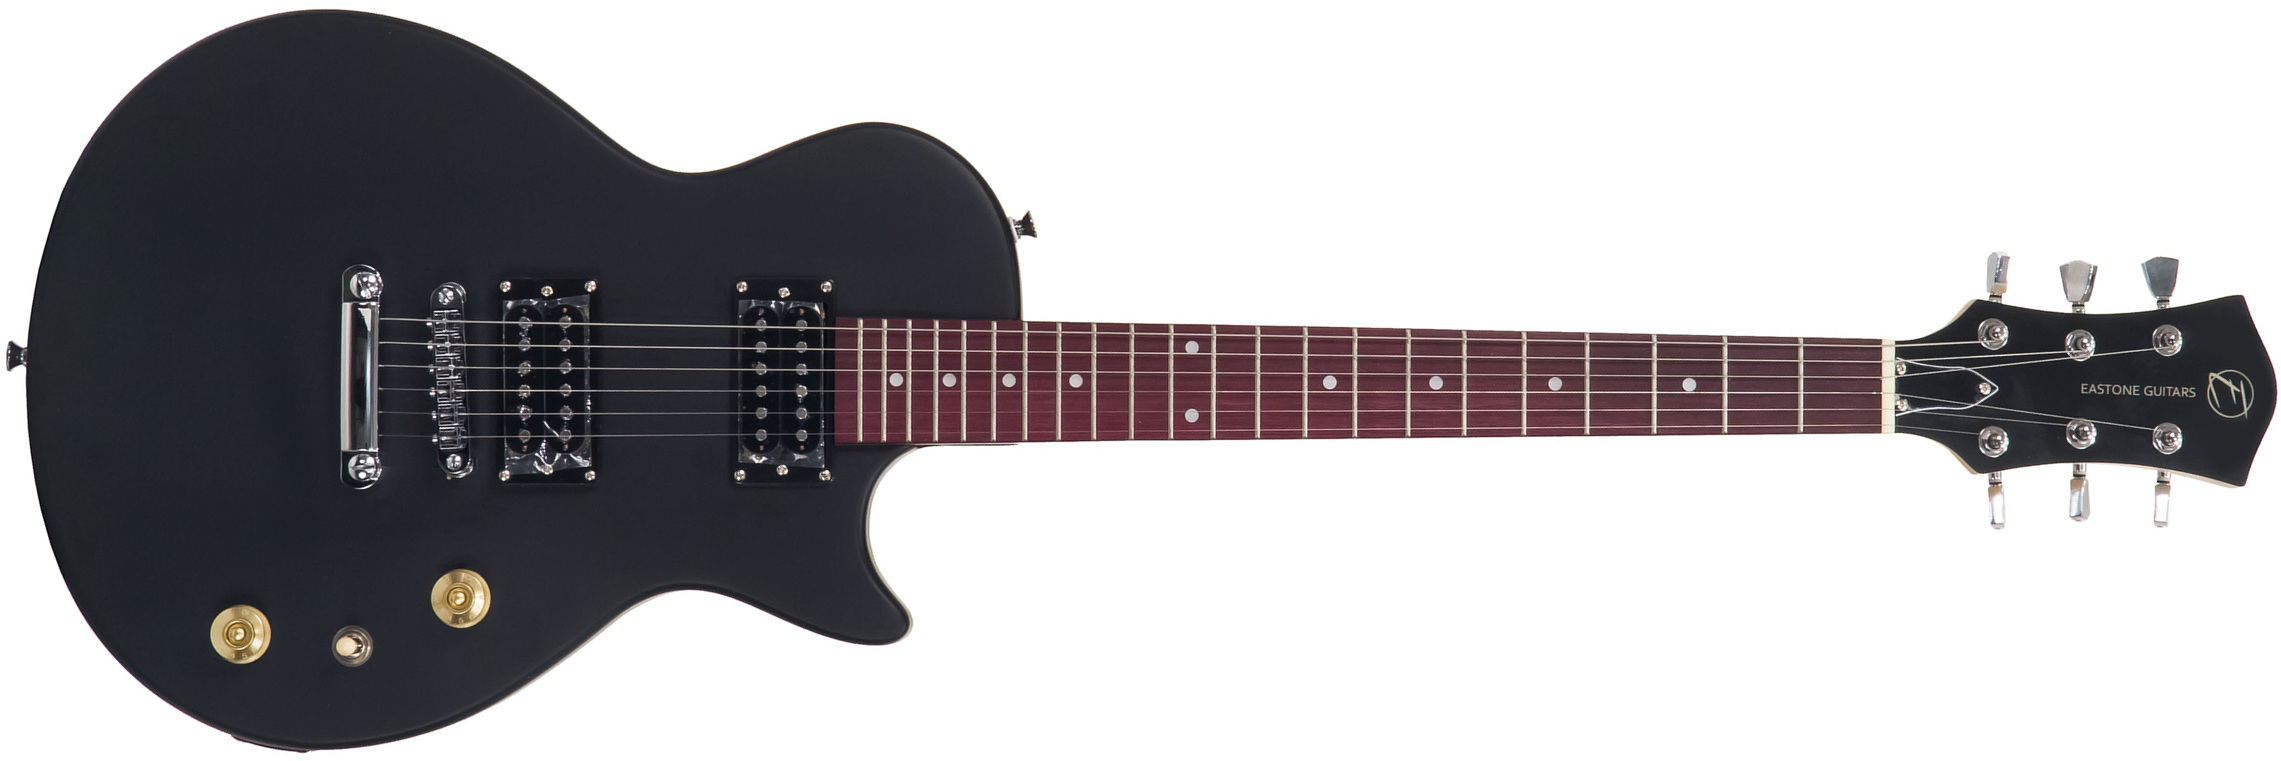 Eastone Lpl70 Hh Ht Pur - Black Satin - Guitarra eléctrica de corte único. - Main picture